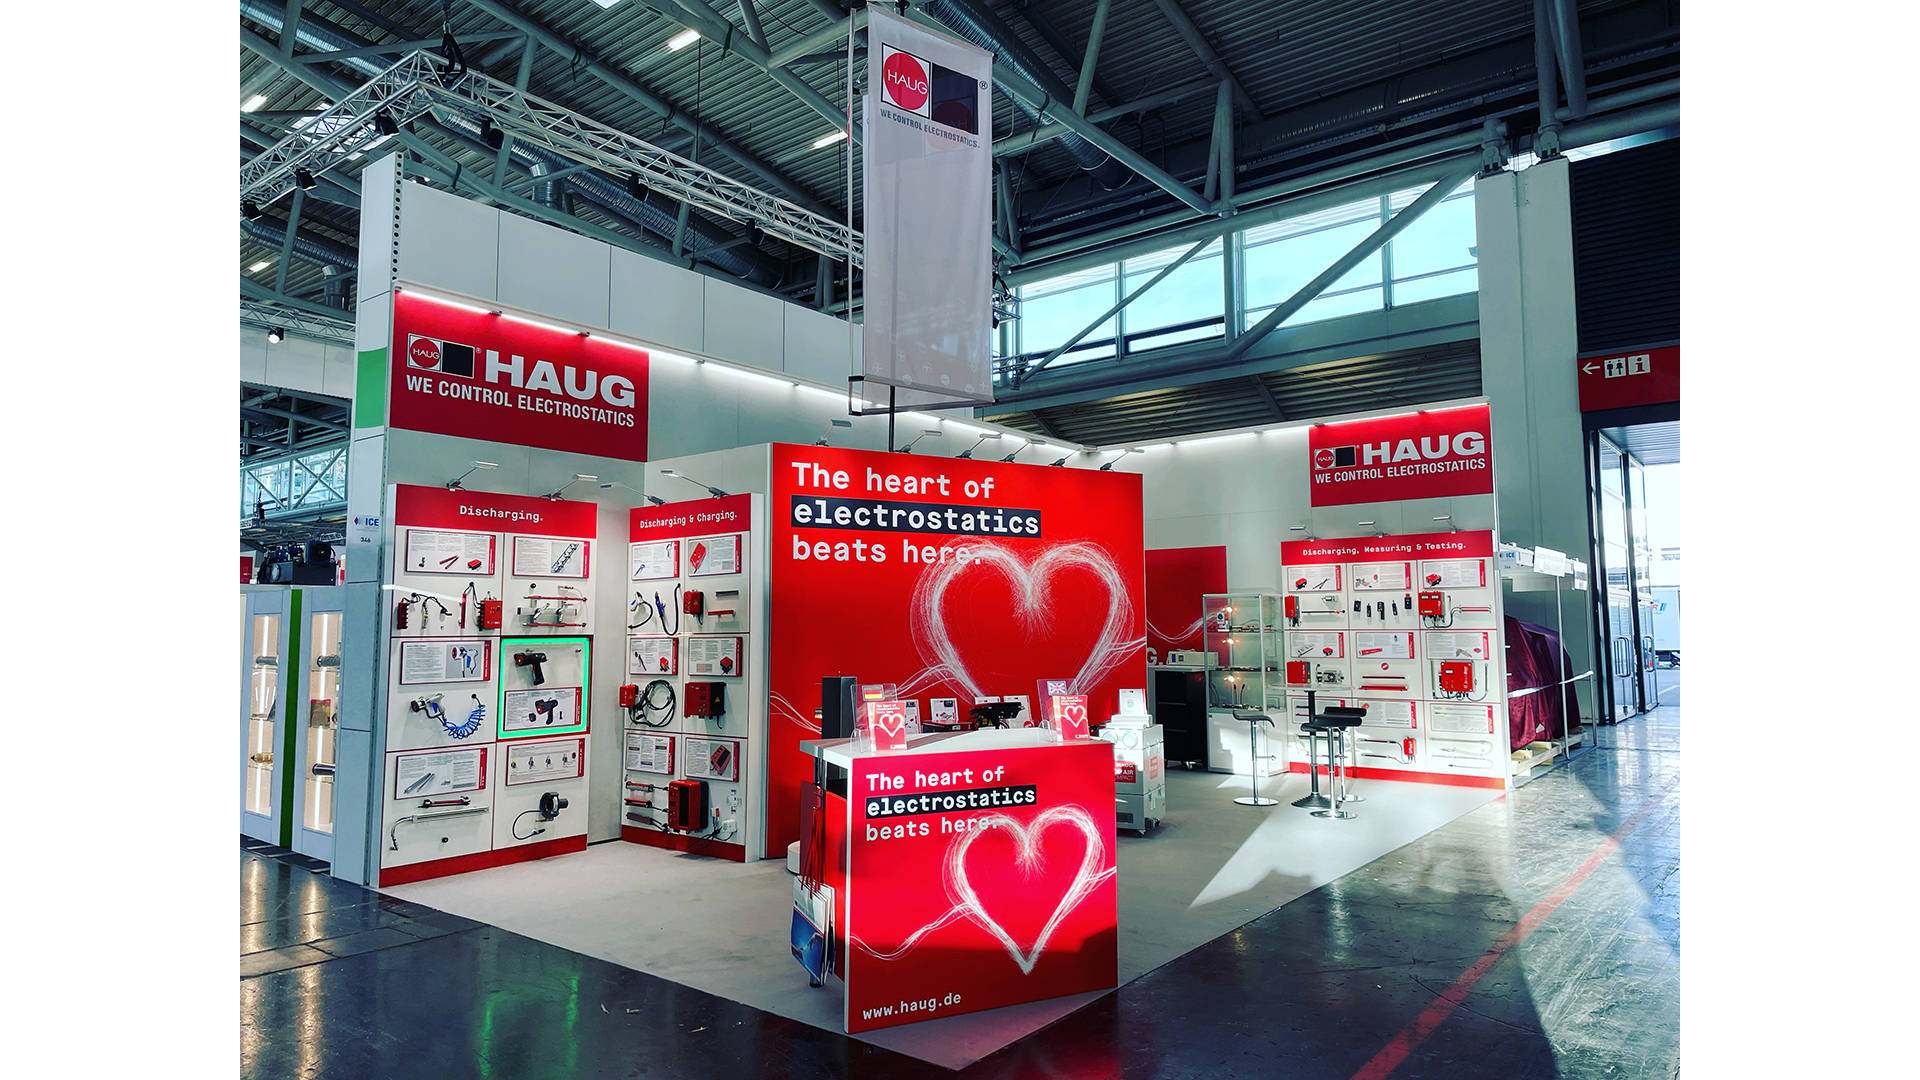 Haug GmbH & Co. KG